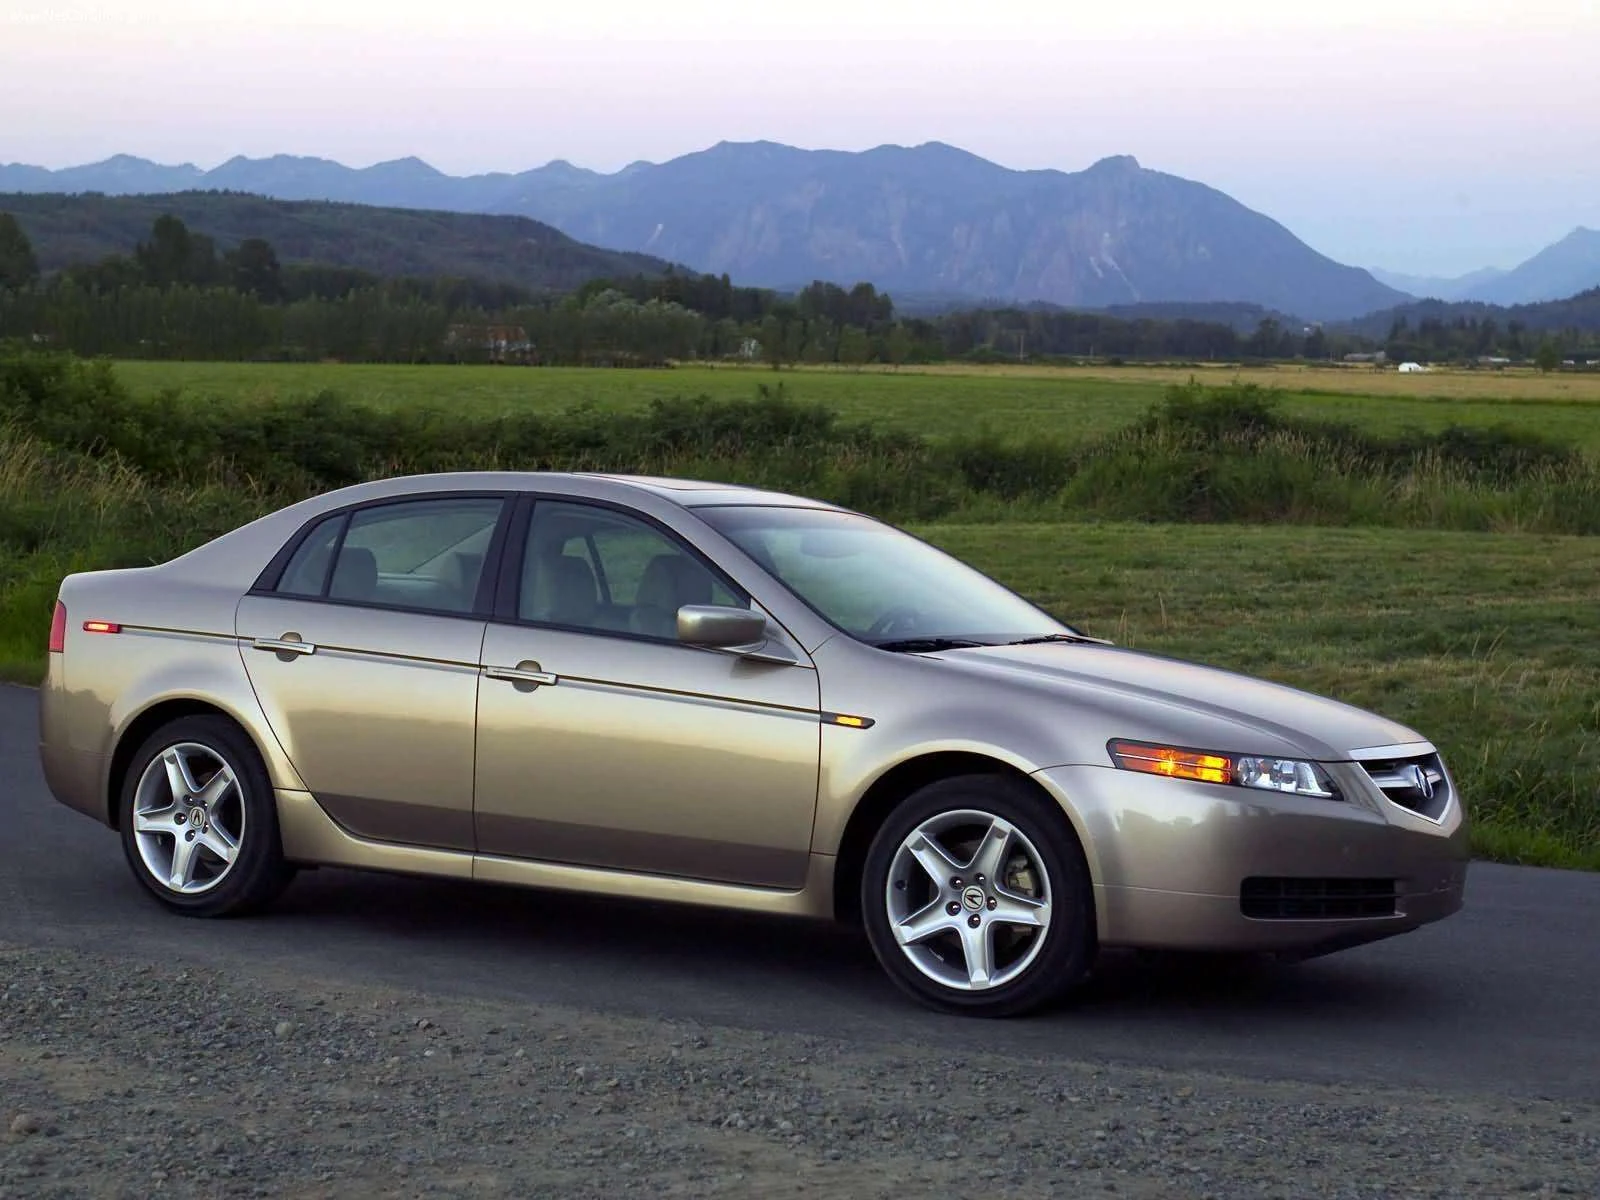 Hình ảnh xe ô tô Acura 3.2 TL 2004 & nội ngoại thất